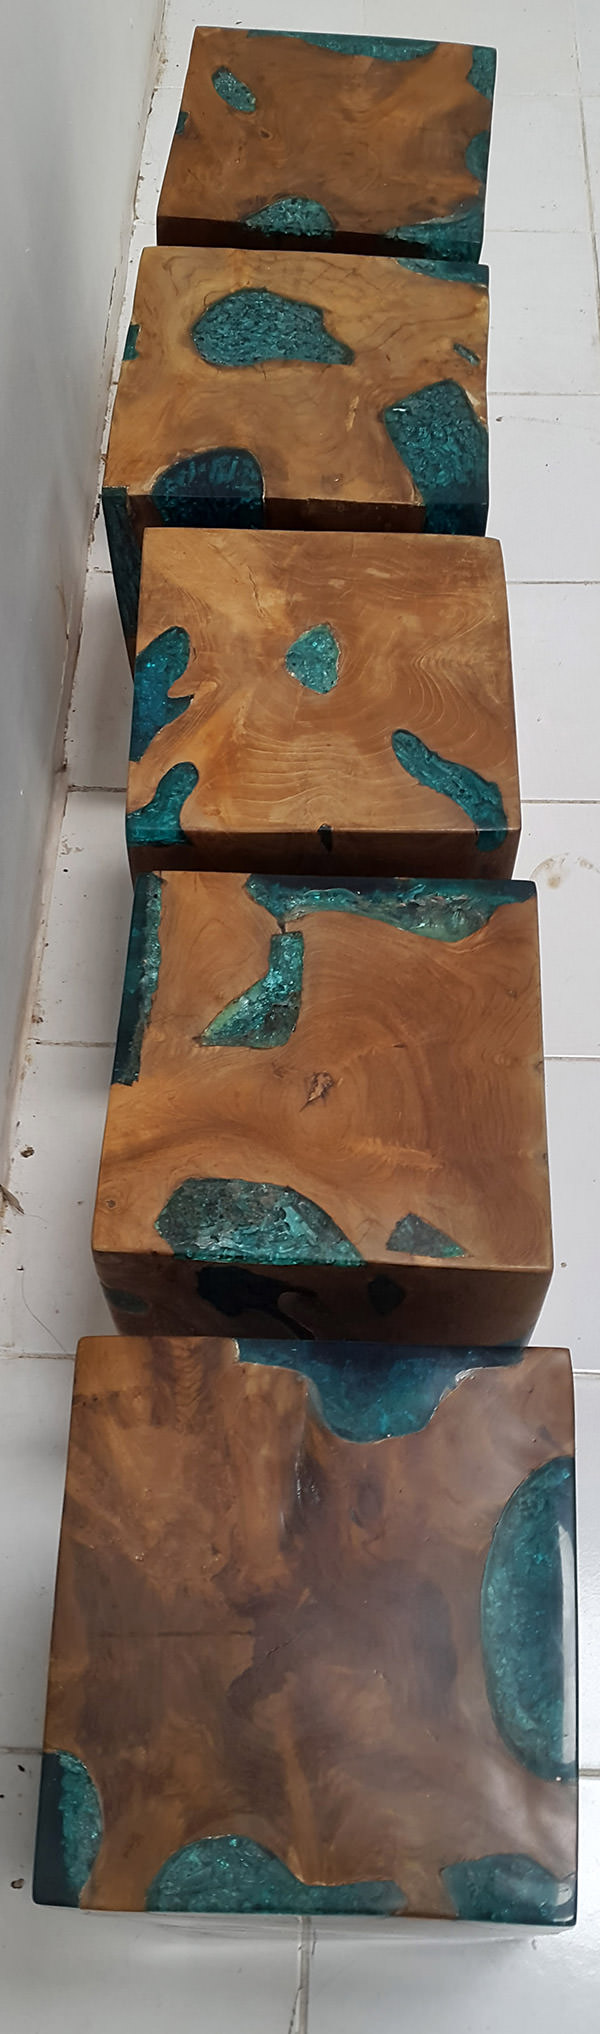 natural teak and resin stool